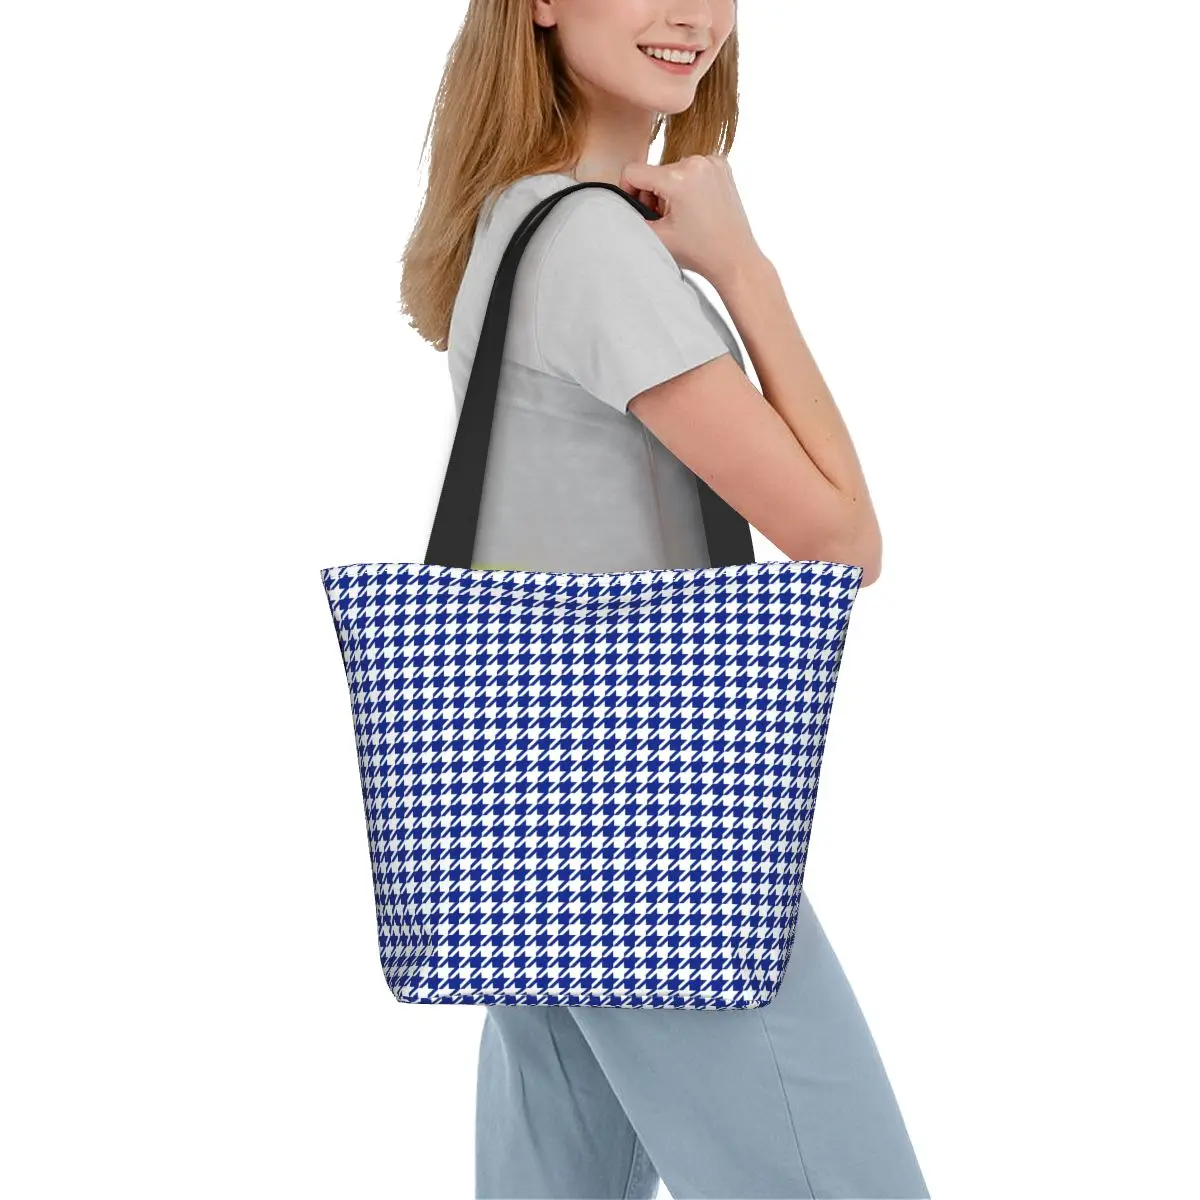 

Сумка для покупок с принтом «гусиная лапка», классические синие и белые ретро сумки, тканевая уличная Сумка-тоут, студенческие сумки для покупок на заказ